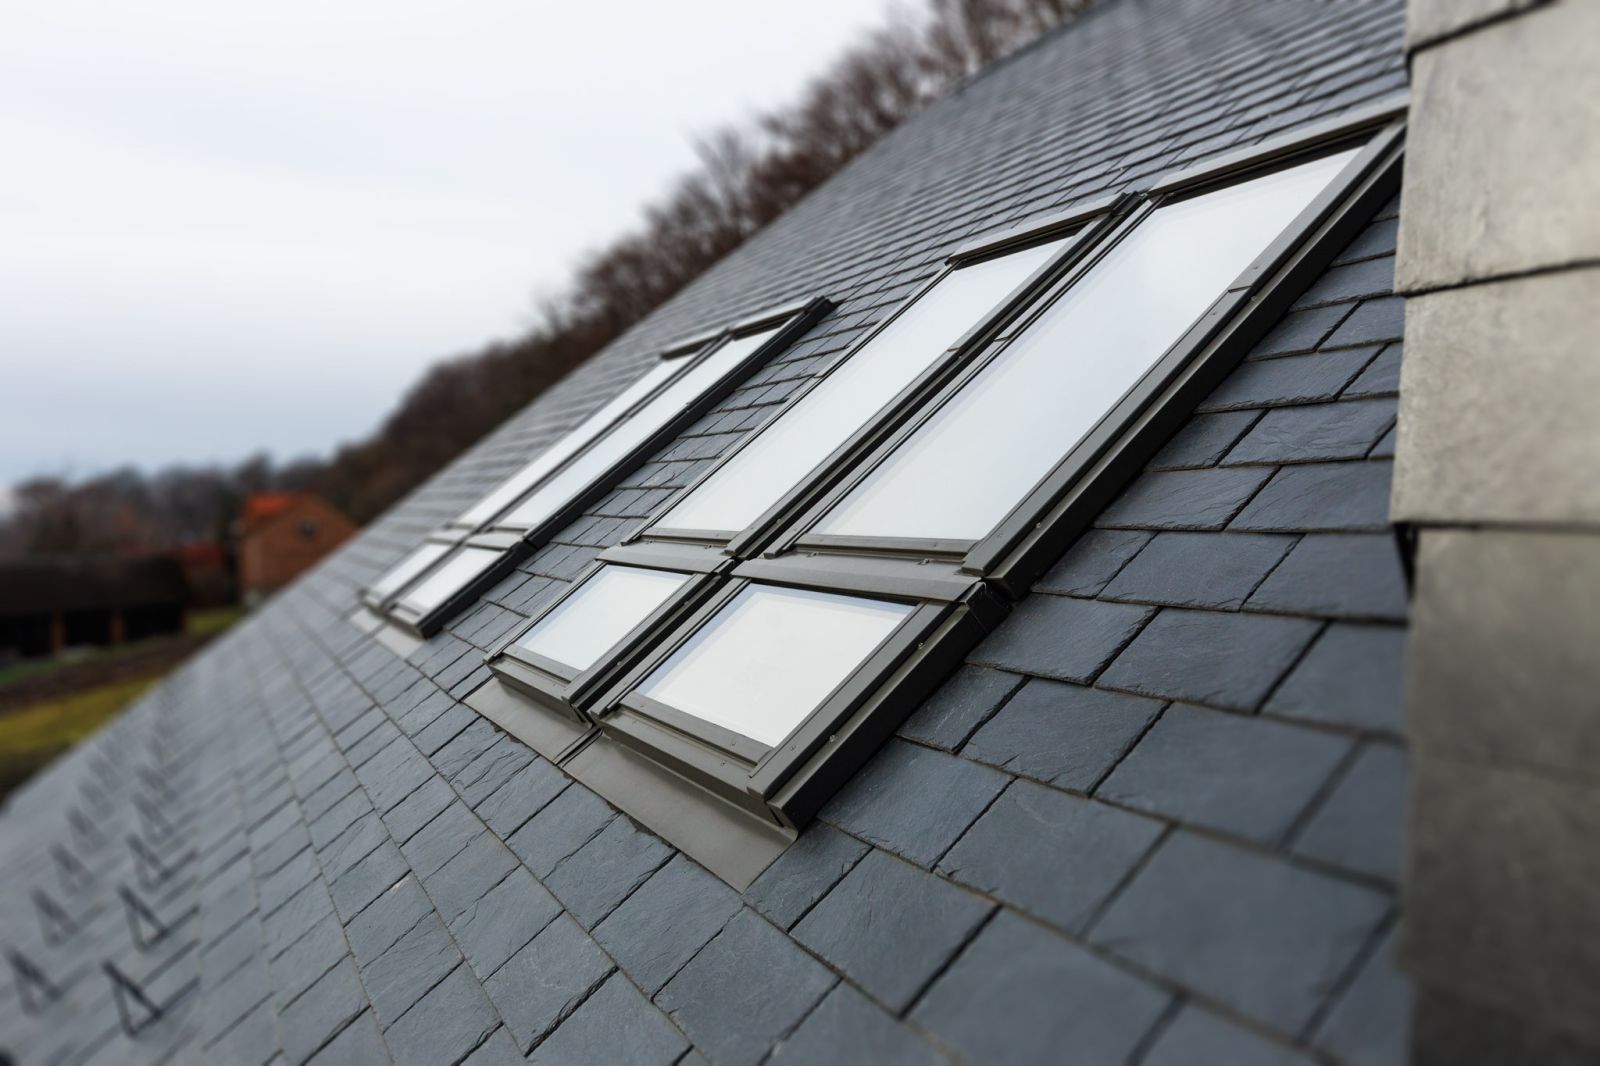 Nawet najbardziej energooszczędne okno nie spełni swoich funkcji jeśli nie będzie poprawnie zamontowane w dachu (fot. FAKRO)